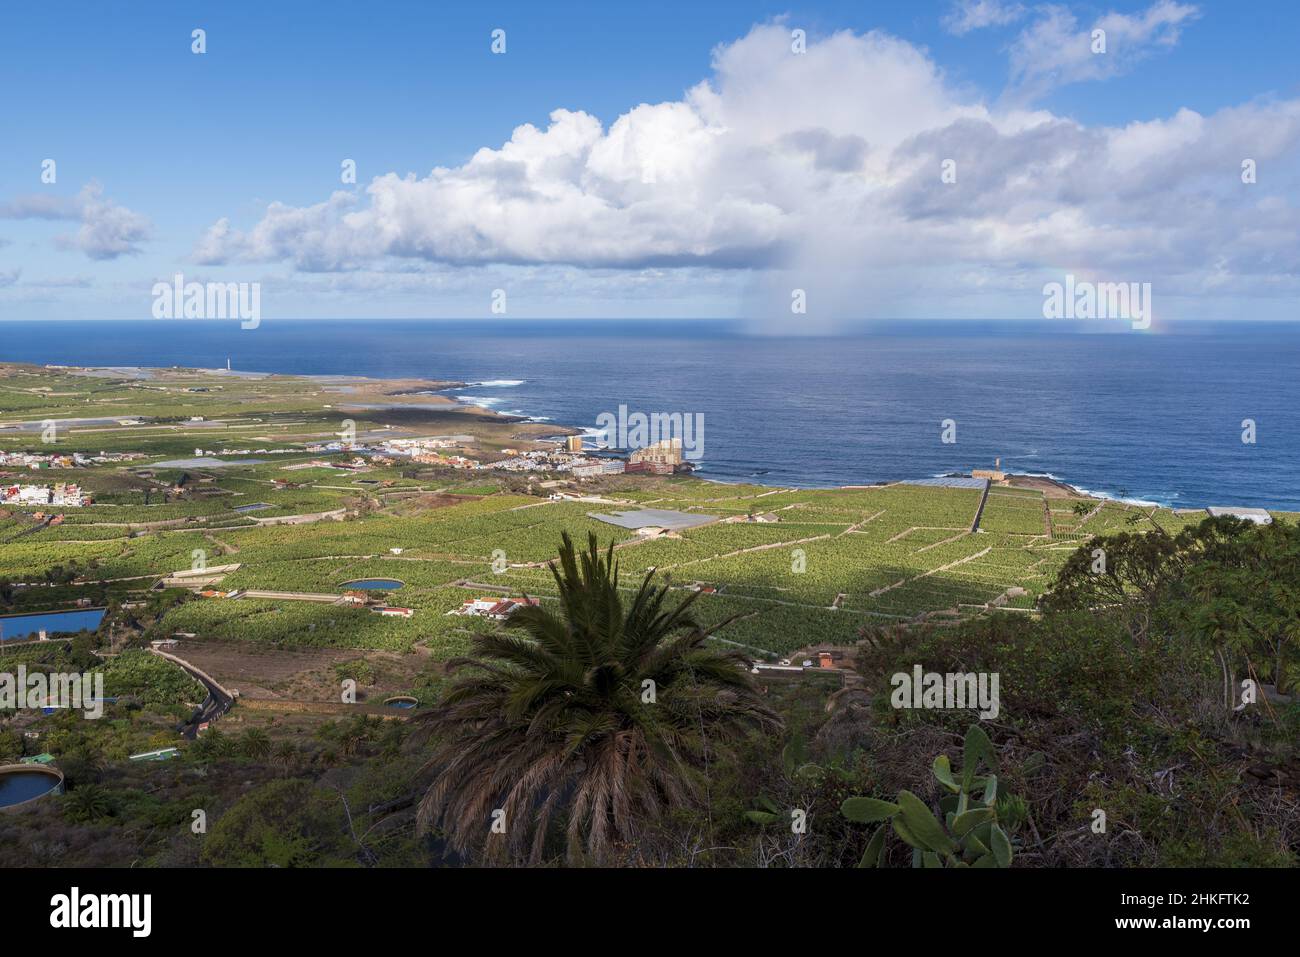 Spain, Canary Islands, Tenerife, Los Silos, rainbow over the Atlantic Ocean Stock Photo